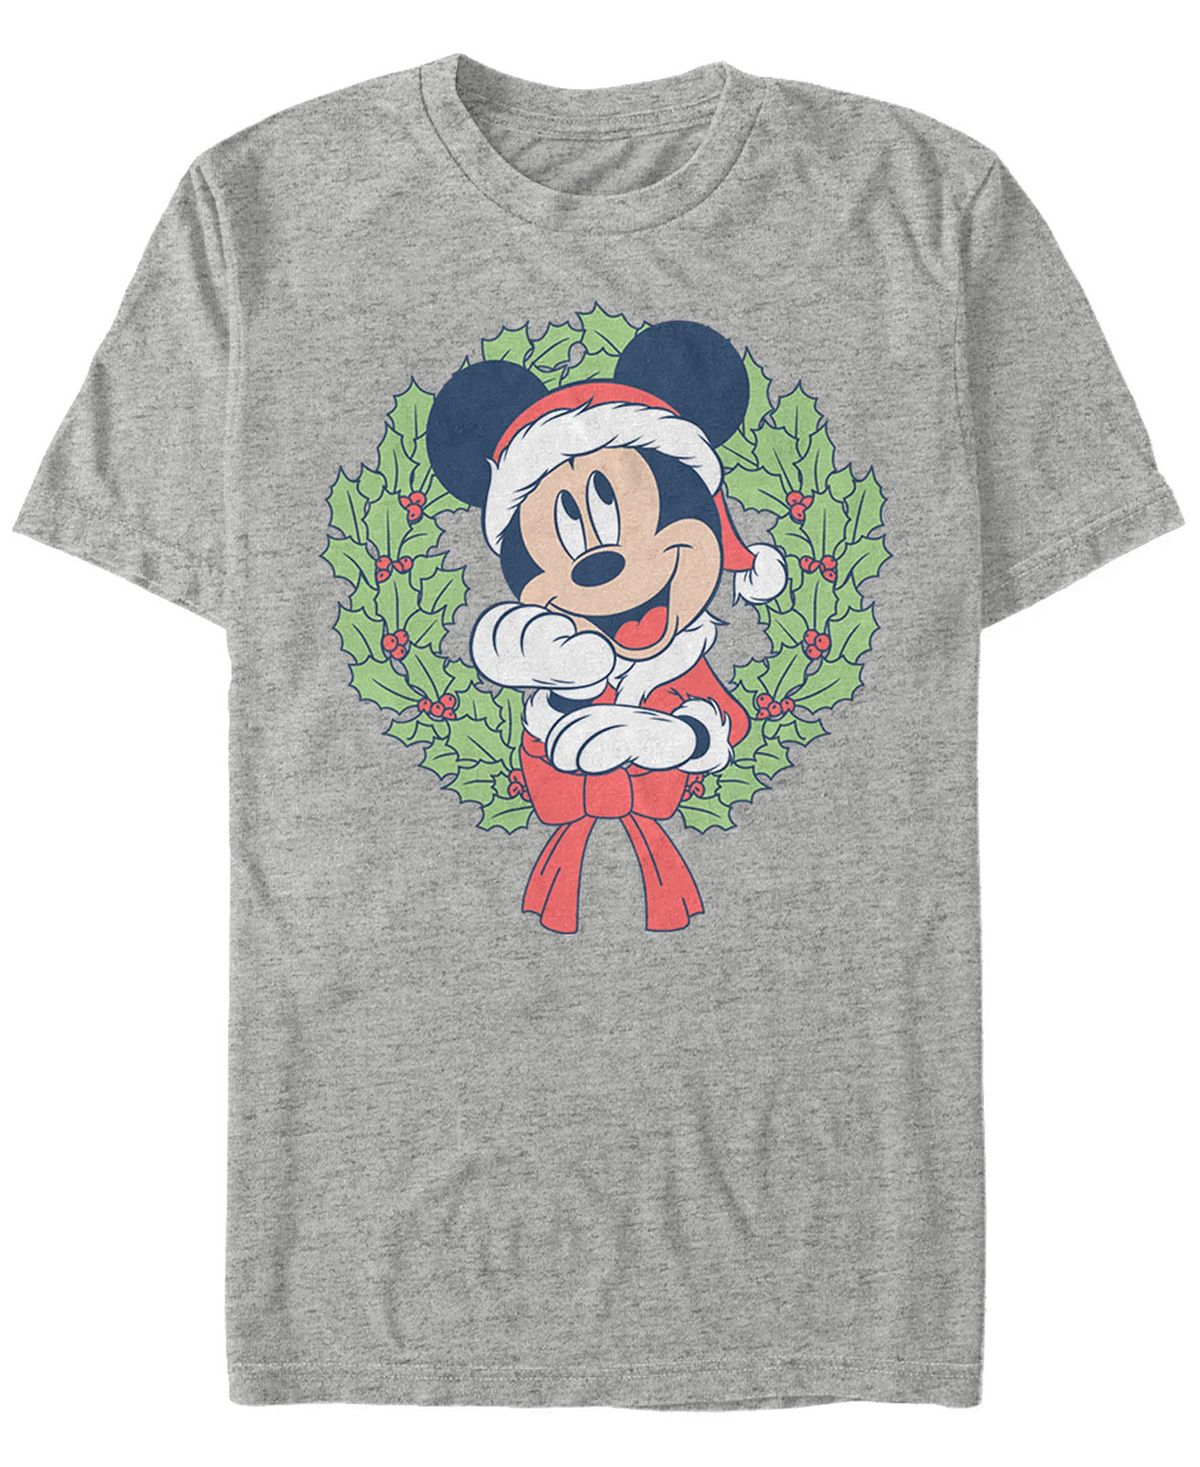 Мужская футболка с короткими рукавами mickey classic mickey christmas wreath Fifth Sun, мульти